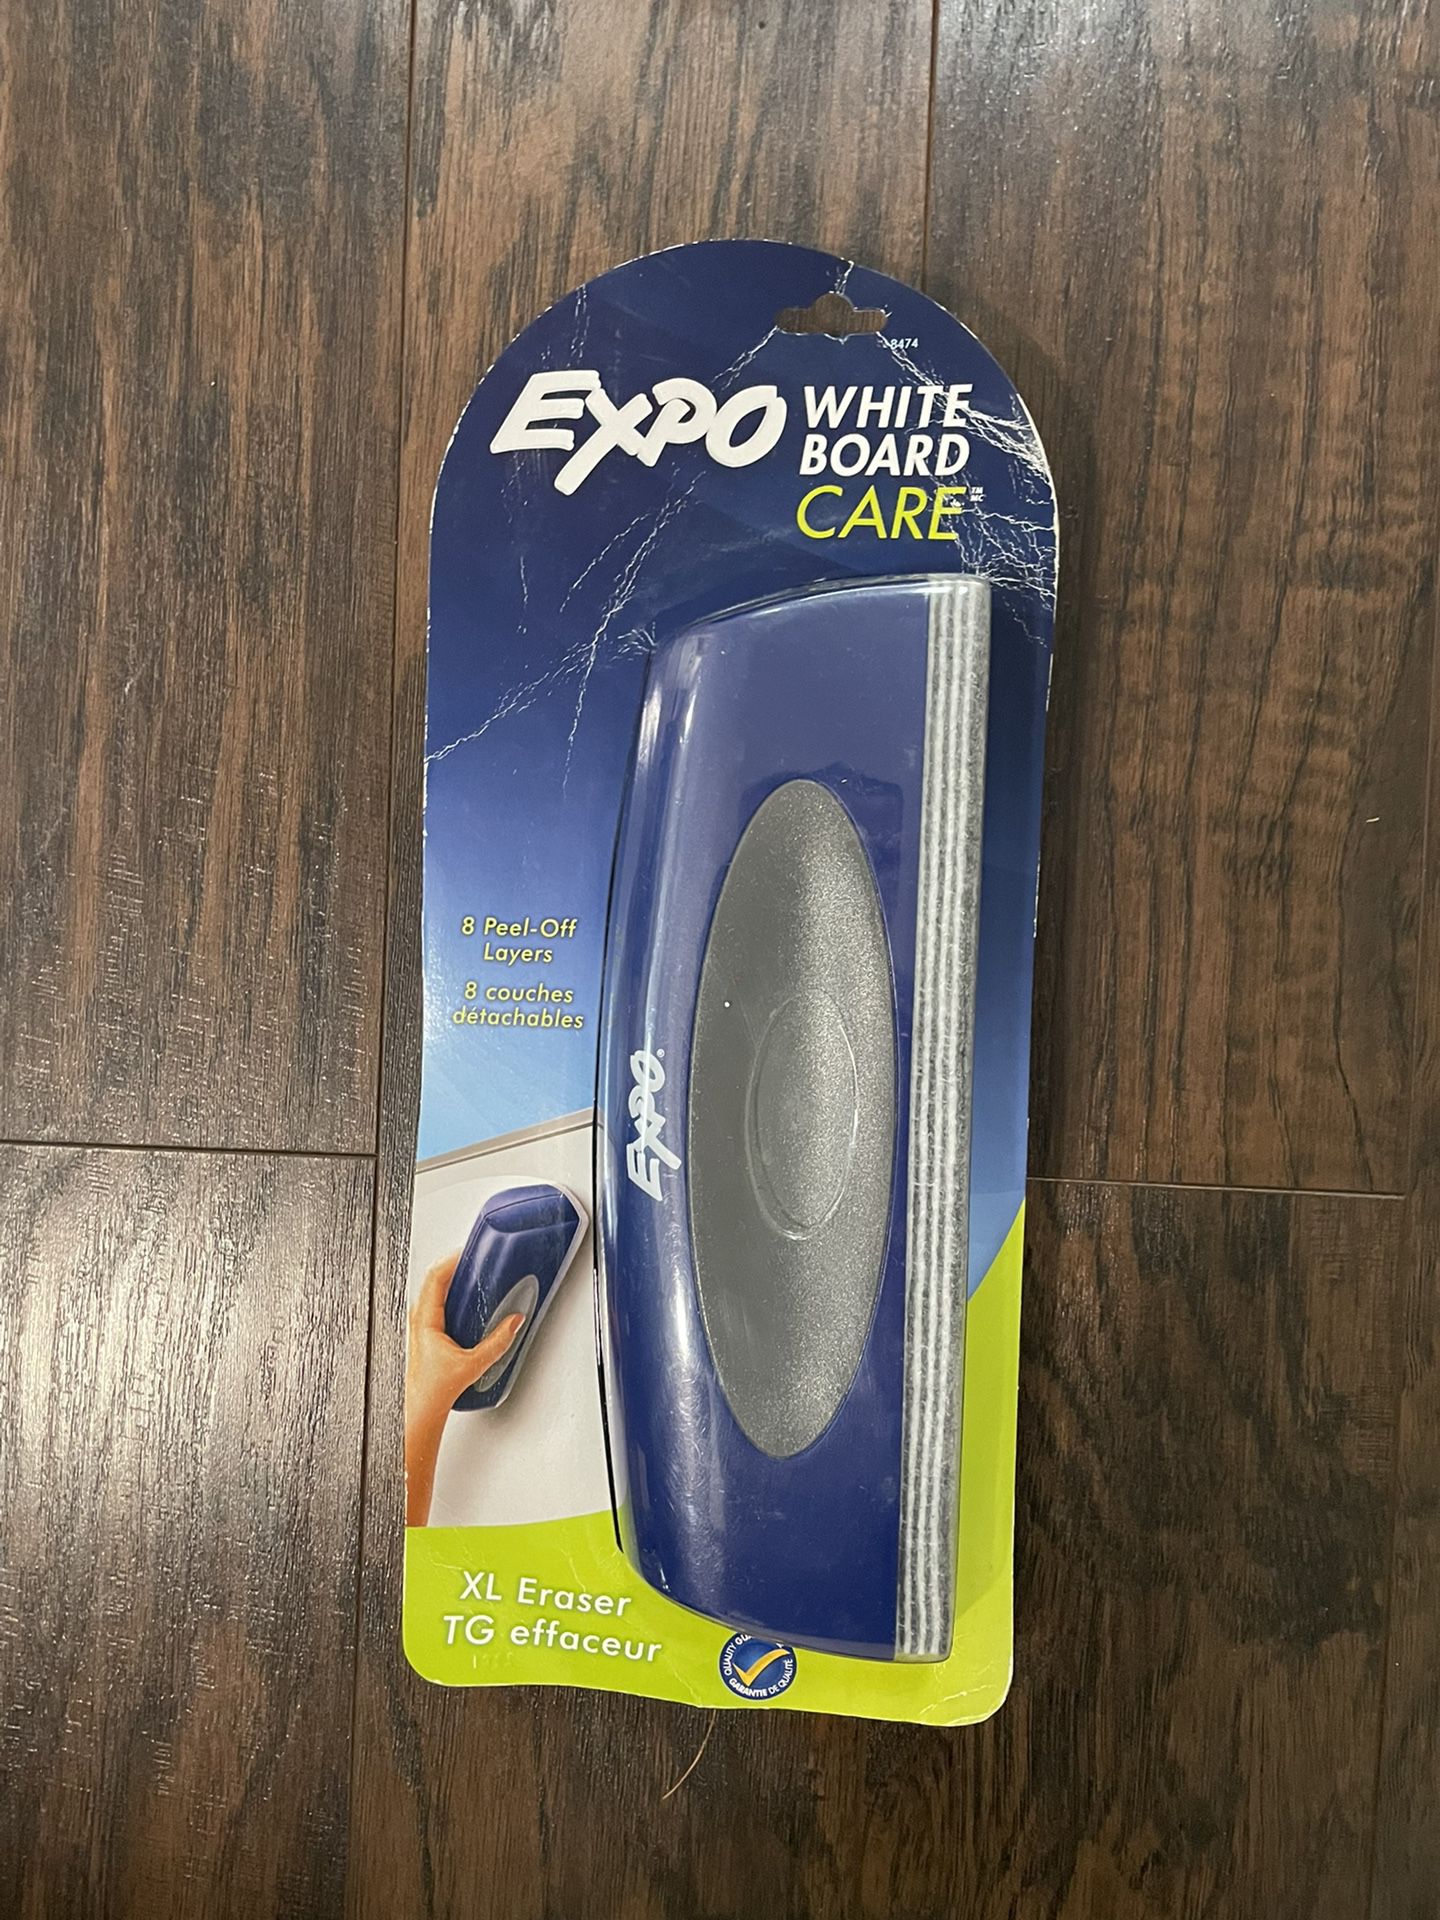 Expo White Board Care